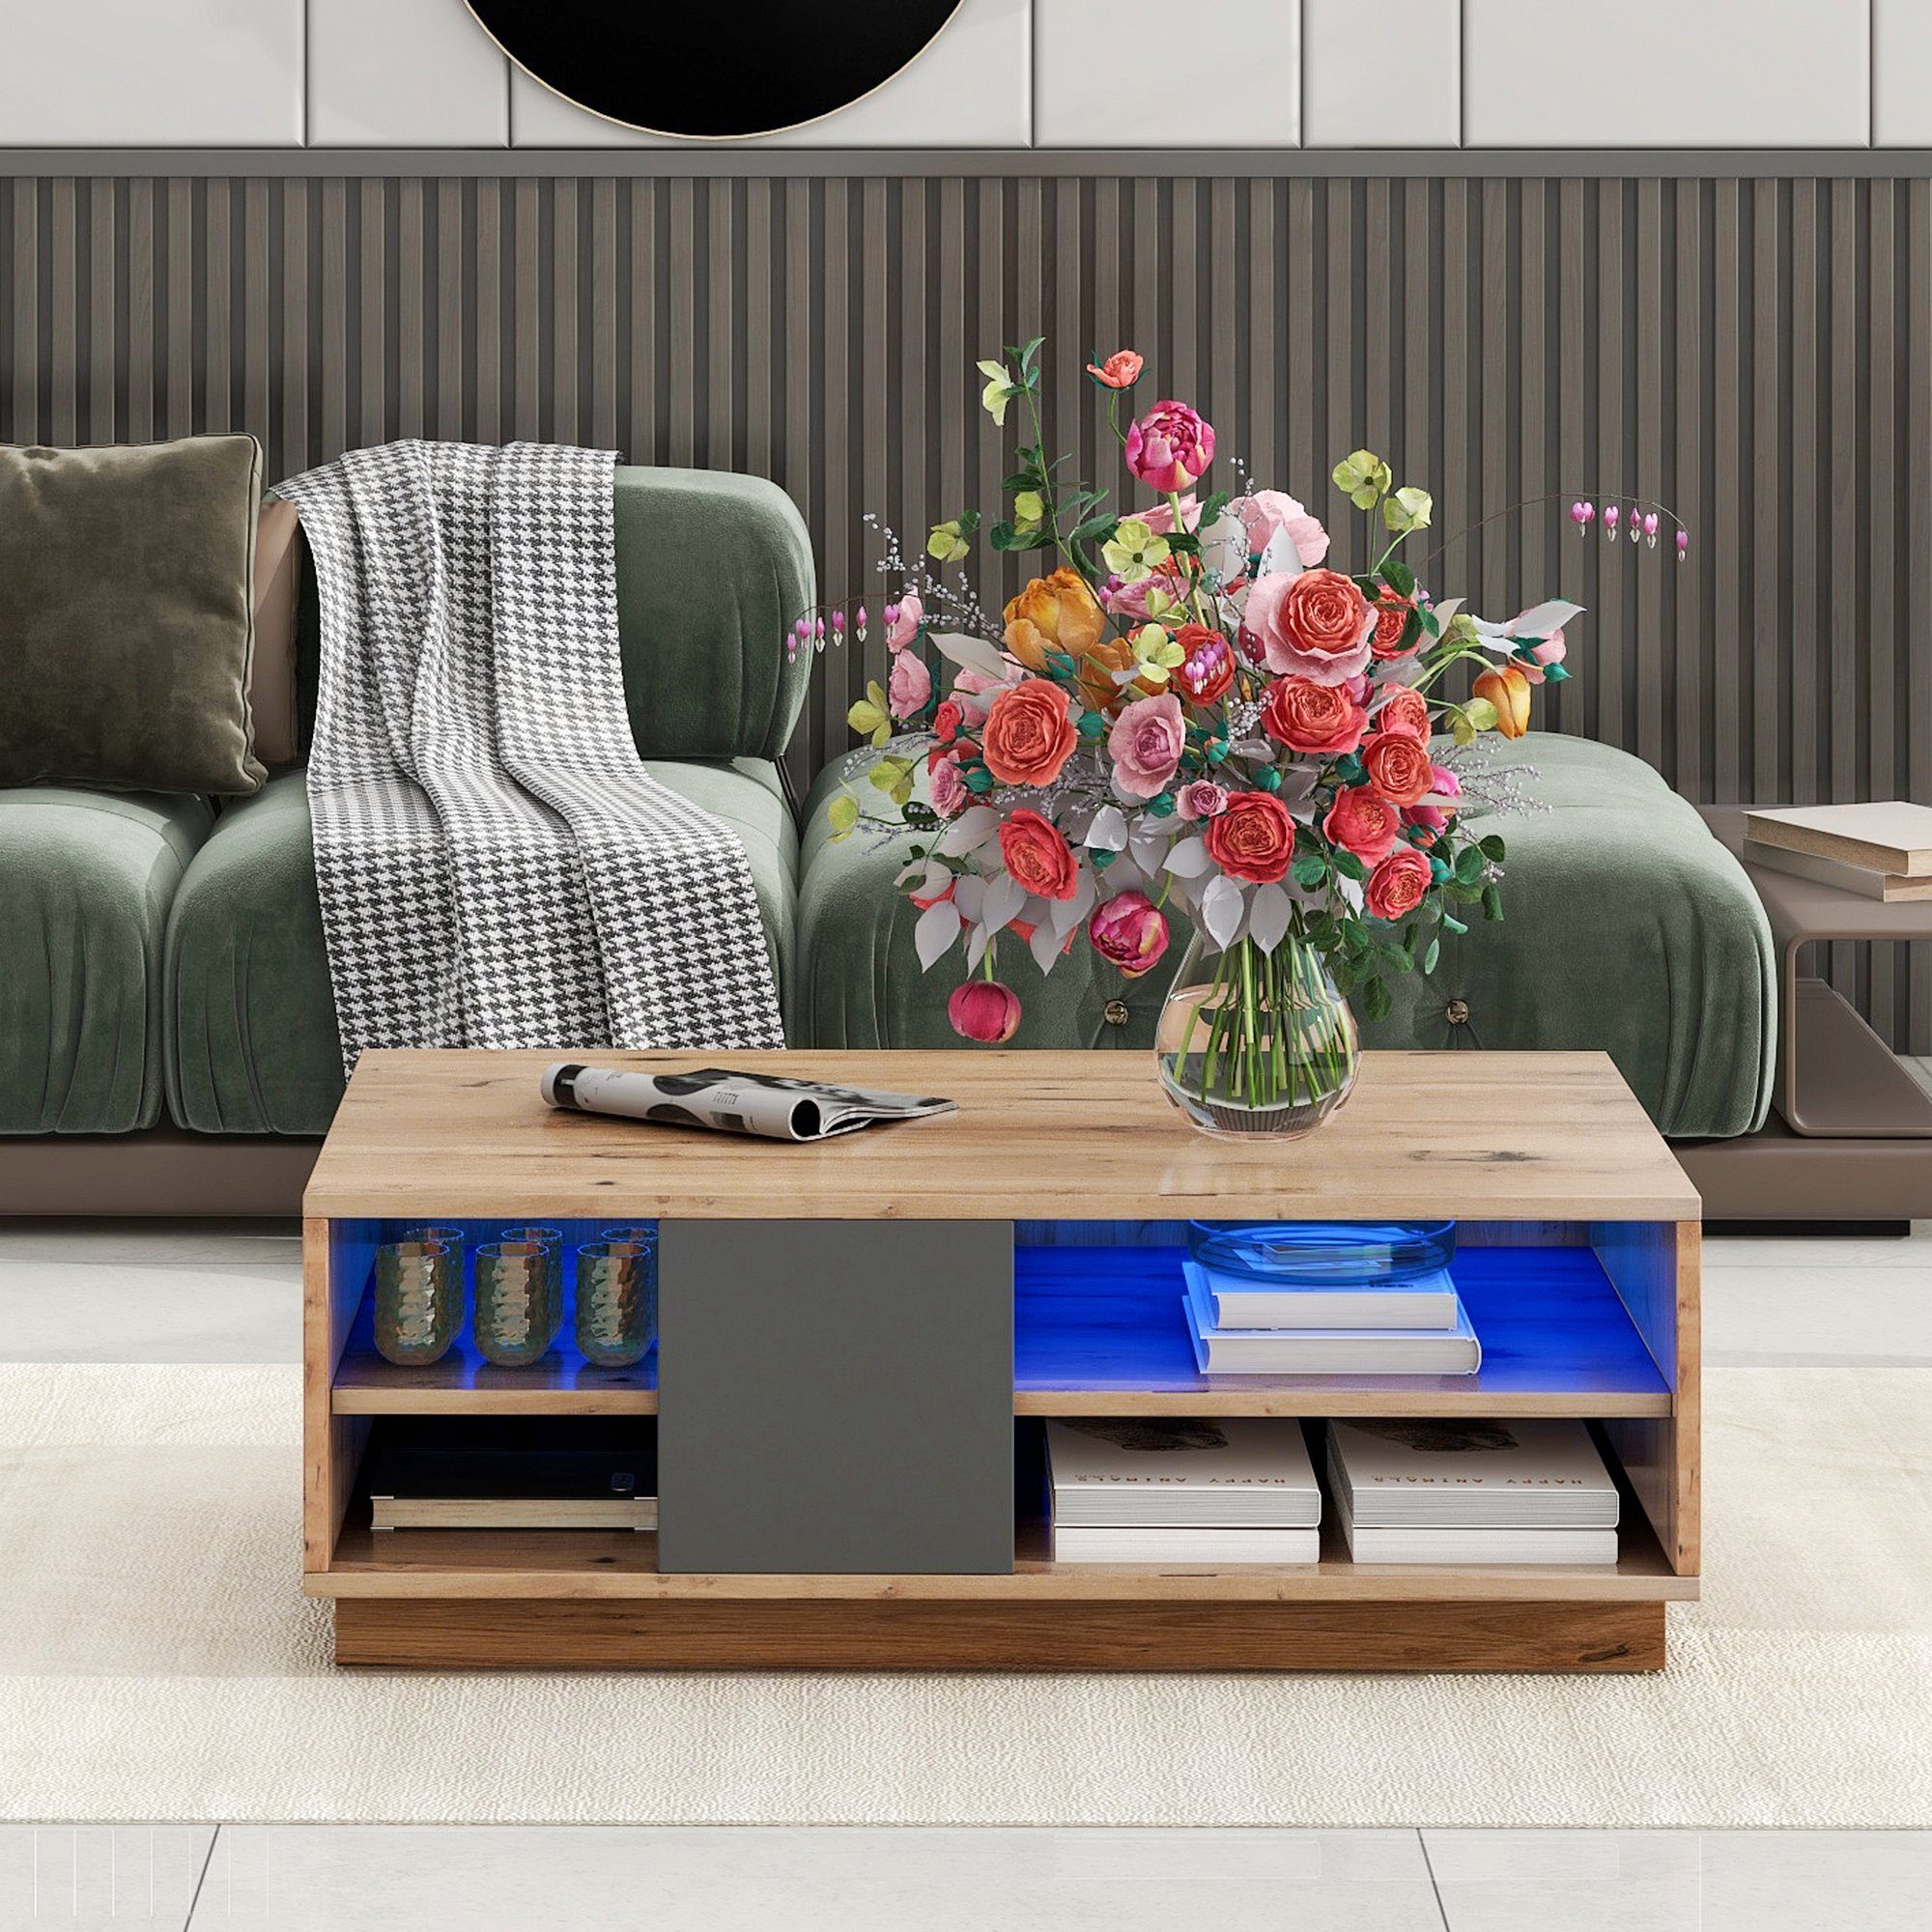 Originalfarbener moderne Mosaik-Couchtisch, Wohnzimmermöbel, LED-Beleuchtung Couchtisch Celya